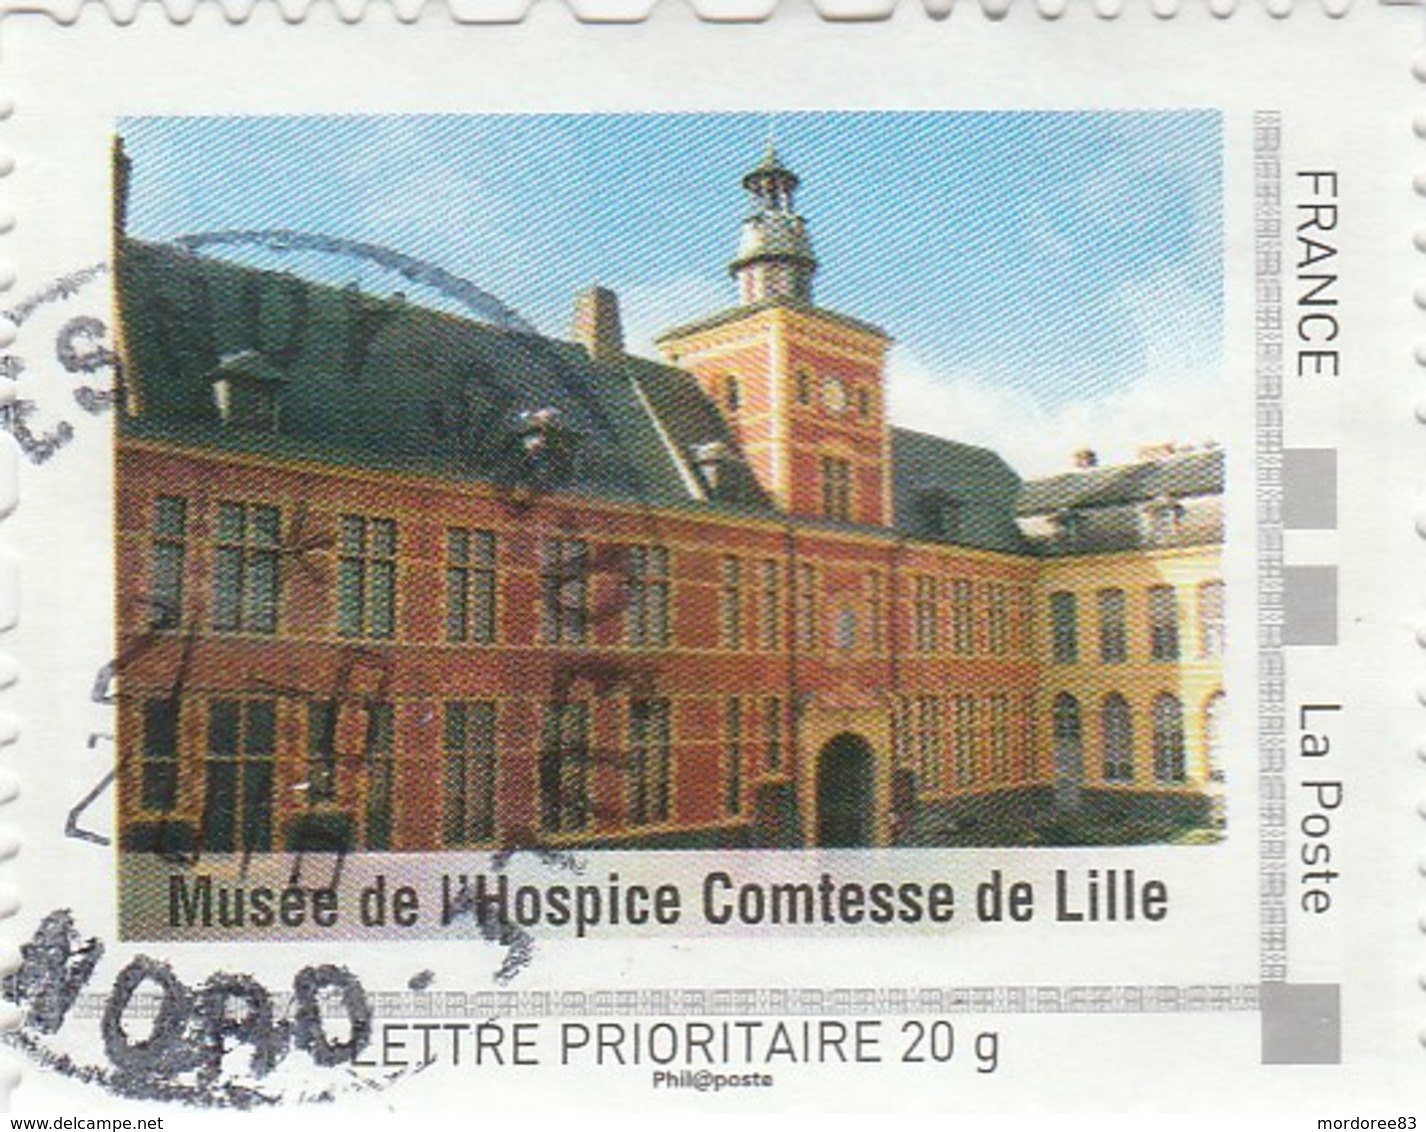 ISSU COLLECTOR NORD PAS DE CALAIS 2009 MUSEE DE L HOSPICE COMTESSE DE LILLE 20G - Collectors